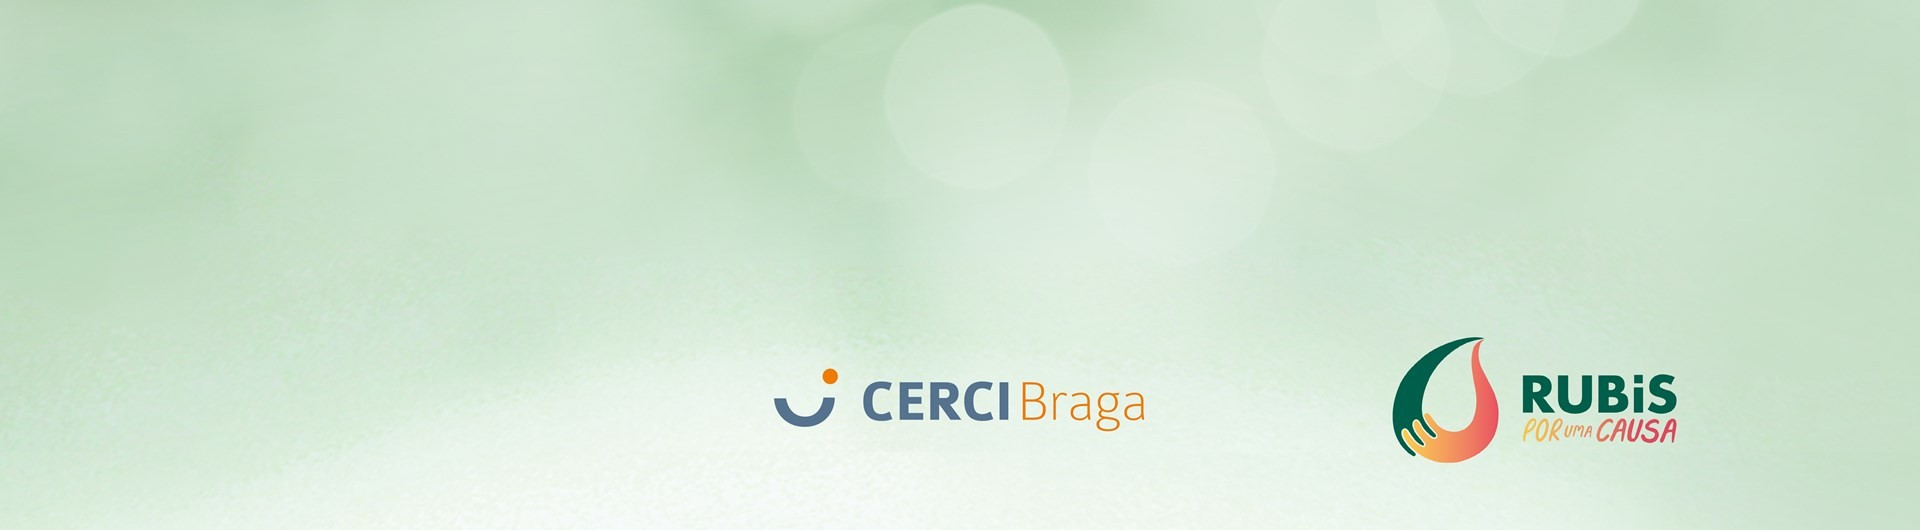 Rubis recebe Prémio Gratidão da CERCI Braga